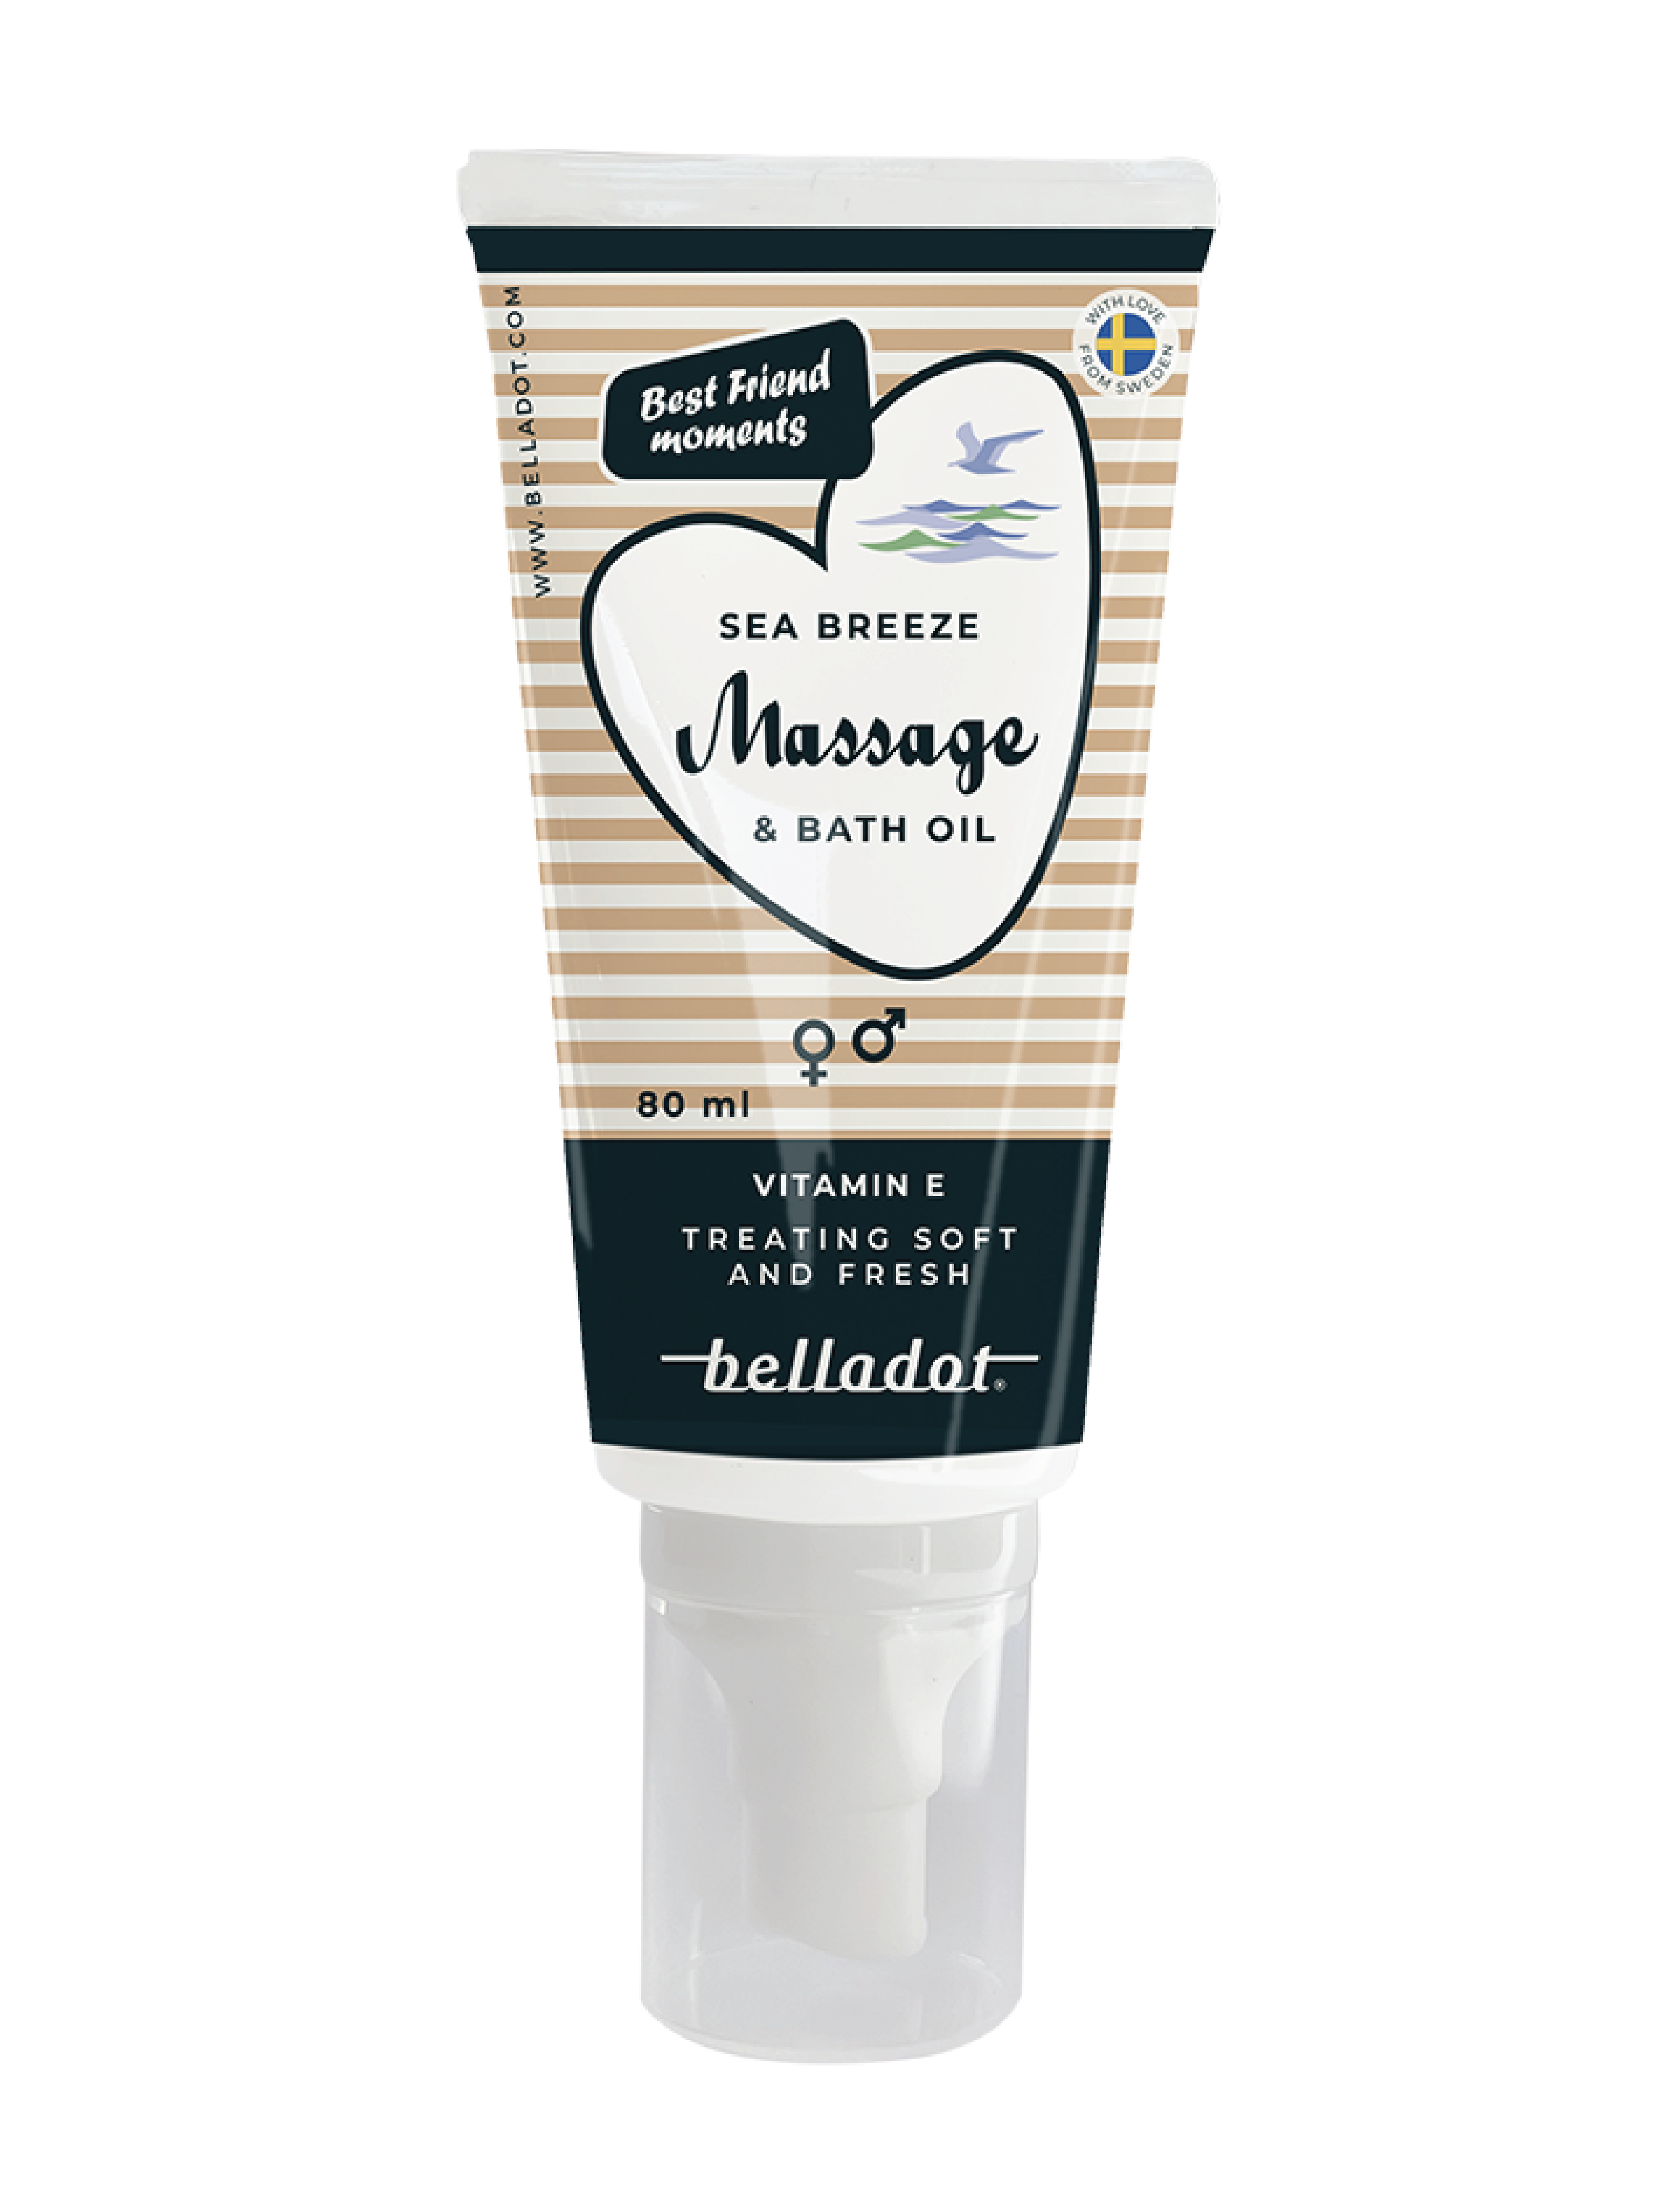 Belladot Seabreeze Massage & Bath Oil, 80 ml